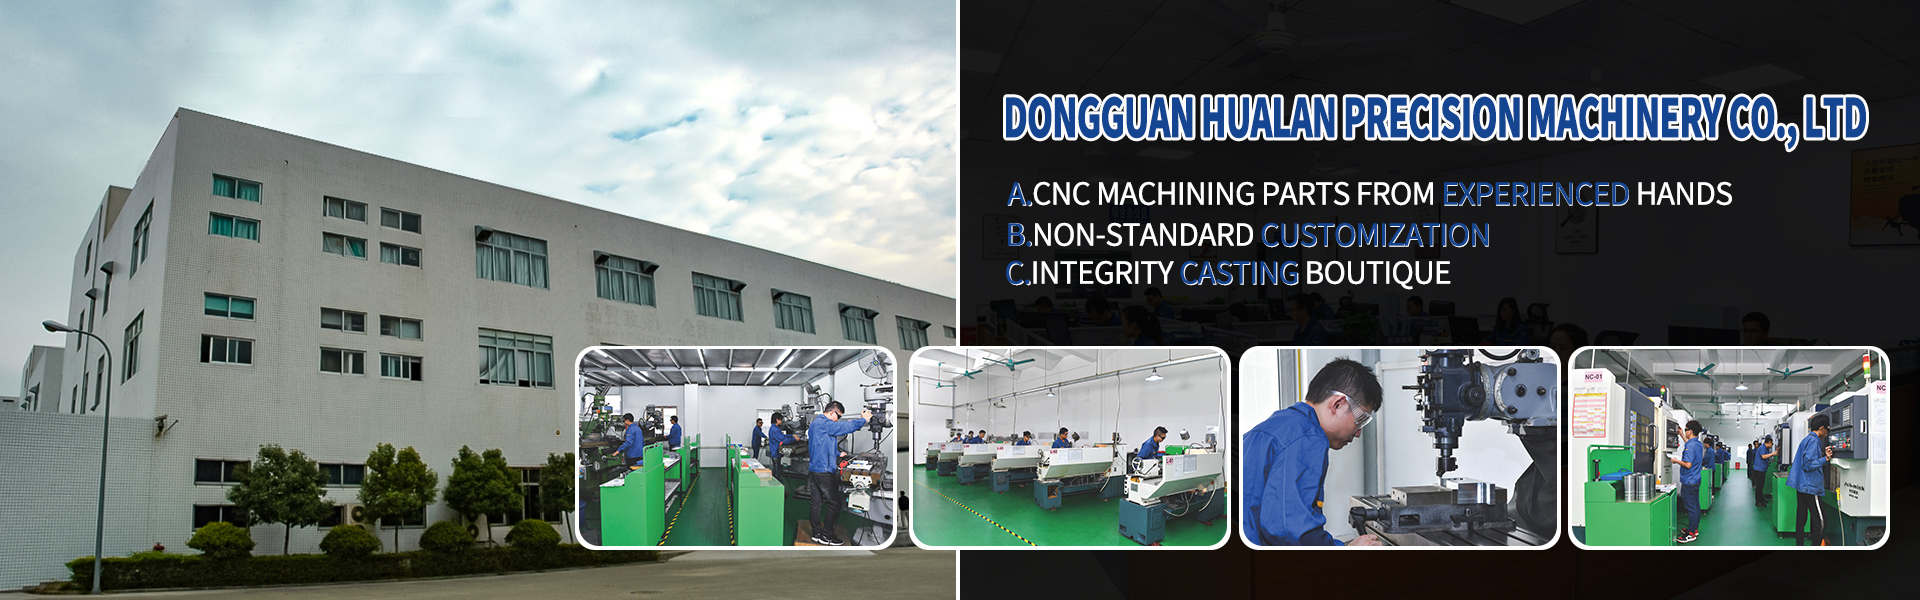 Pièces d\'usinage CNC, Turing et Fraisage, coupe de ligne,Dongguan Hualan Precision Machinery Co., LTD